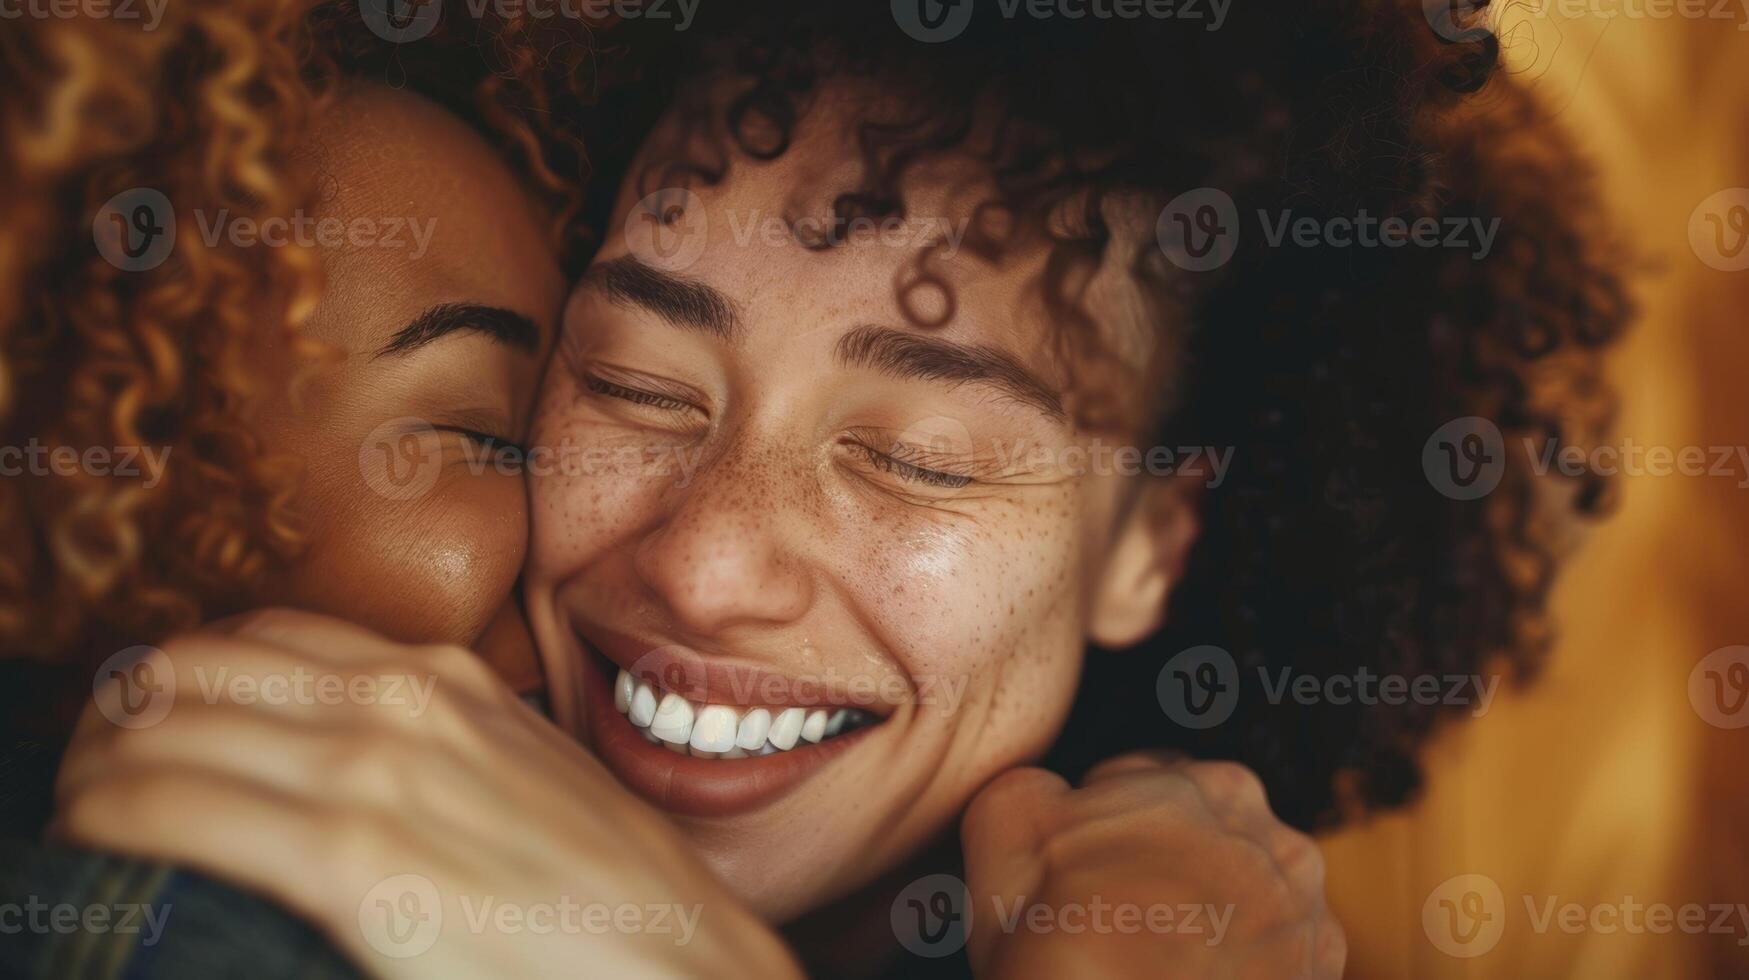 een vrouw omarmt haar vriend tranen van vreugde streaming naar beneden haar gezicht net zo ze vertelt hoe infrarood sauna behandelingen hebben aanzienlijk verminderd haar ongerustheid en verbeterd haar mentaal Gezondheid. foto